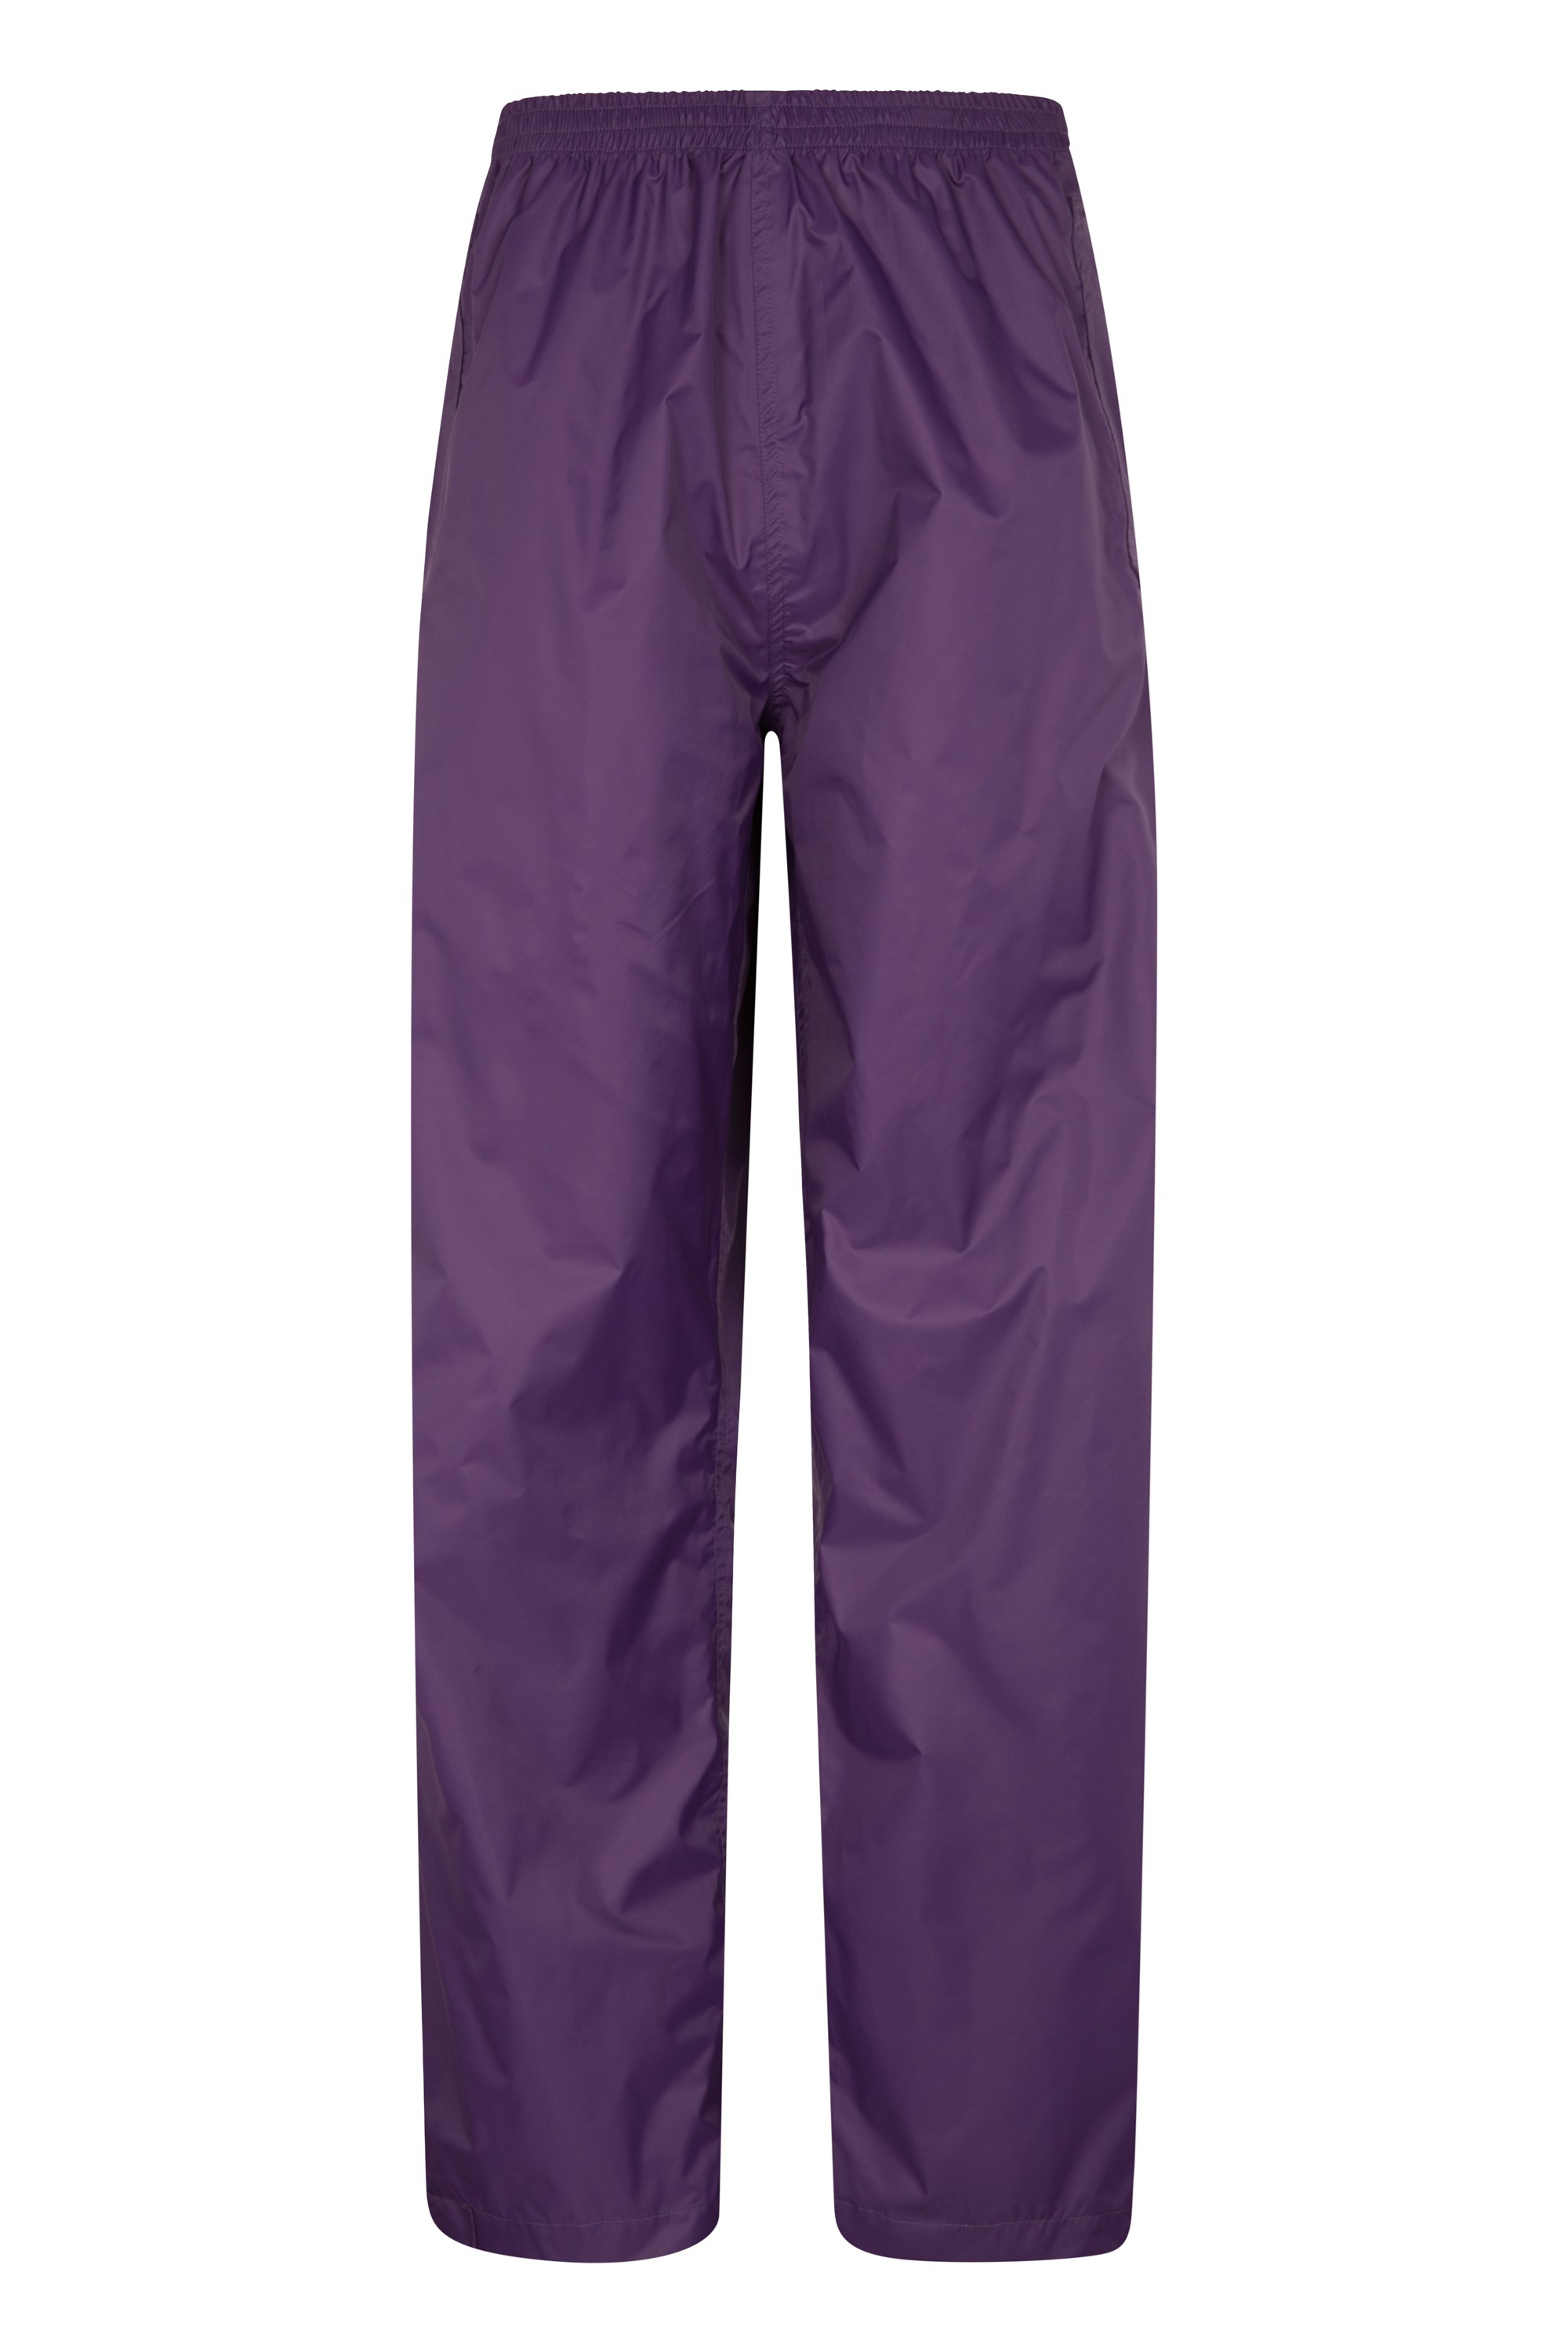 Pakka Womens Waterproof Overtrousers - Purple